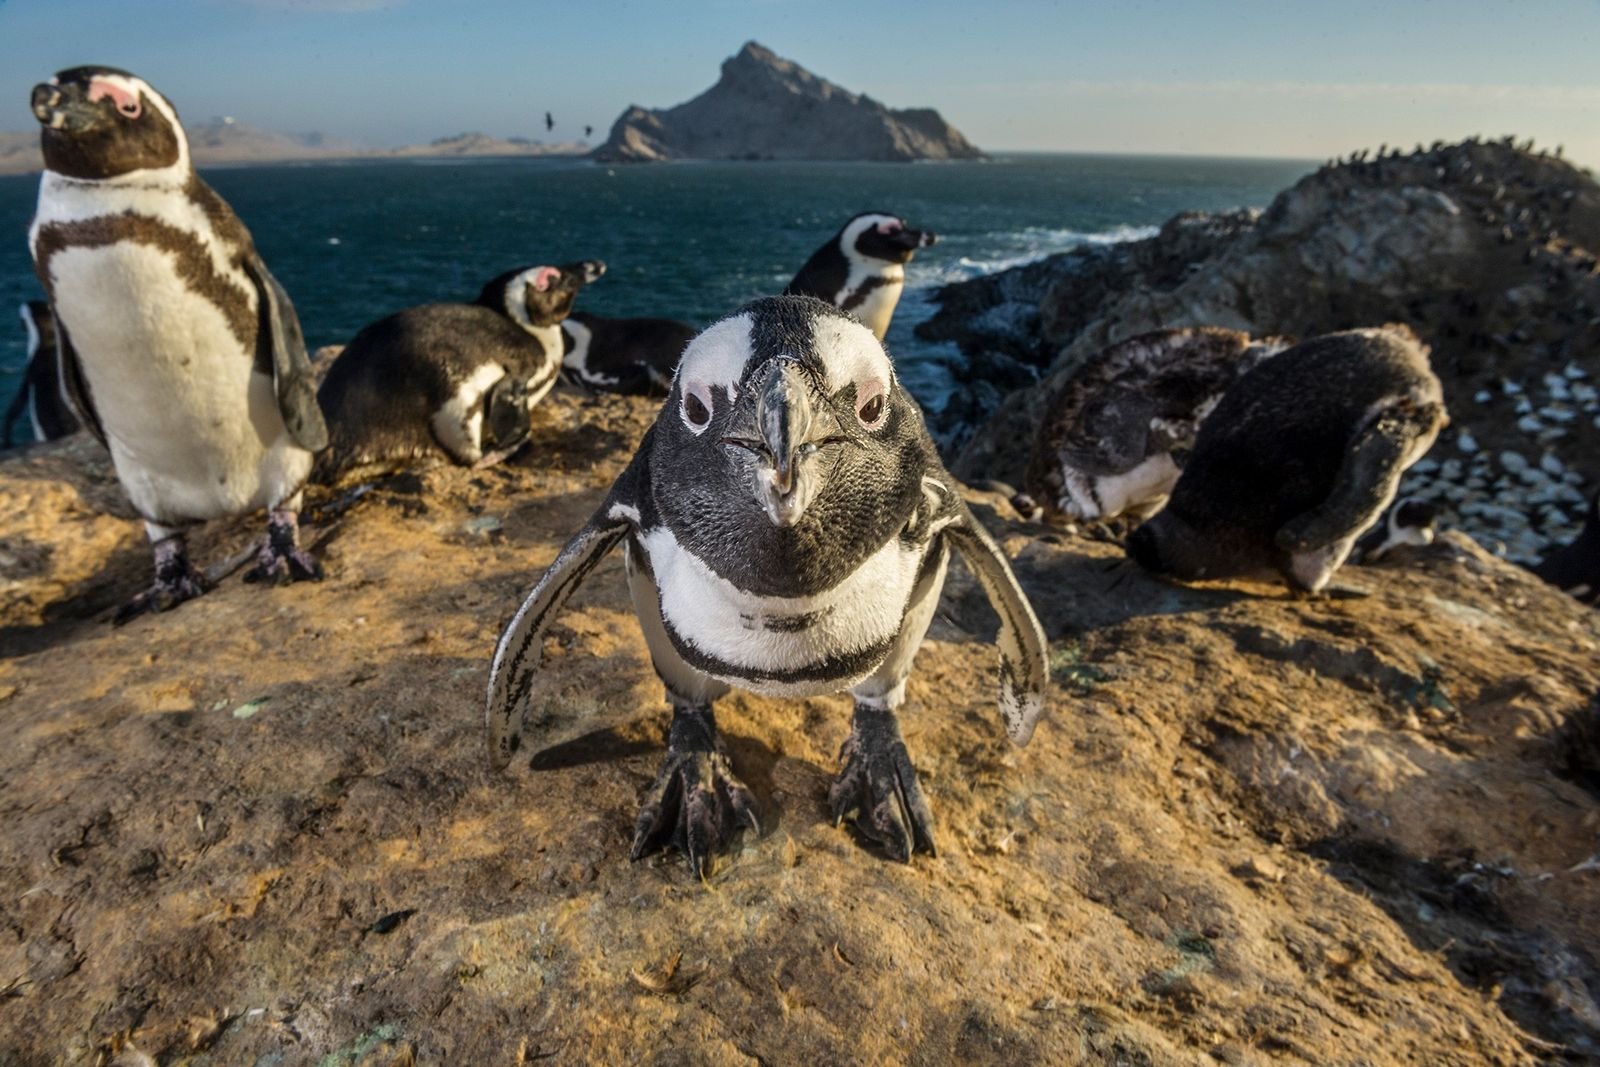 Smarte Vögel: Wie intelligent sind eigentlich Pinguine?